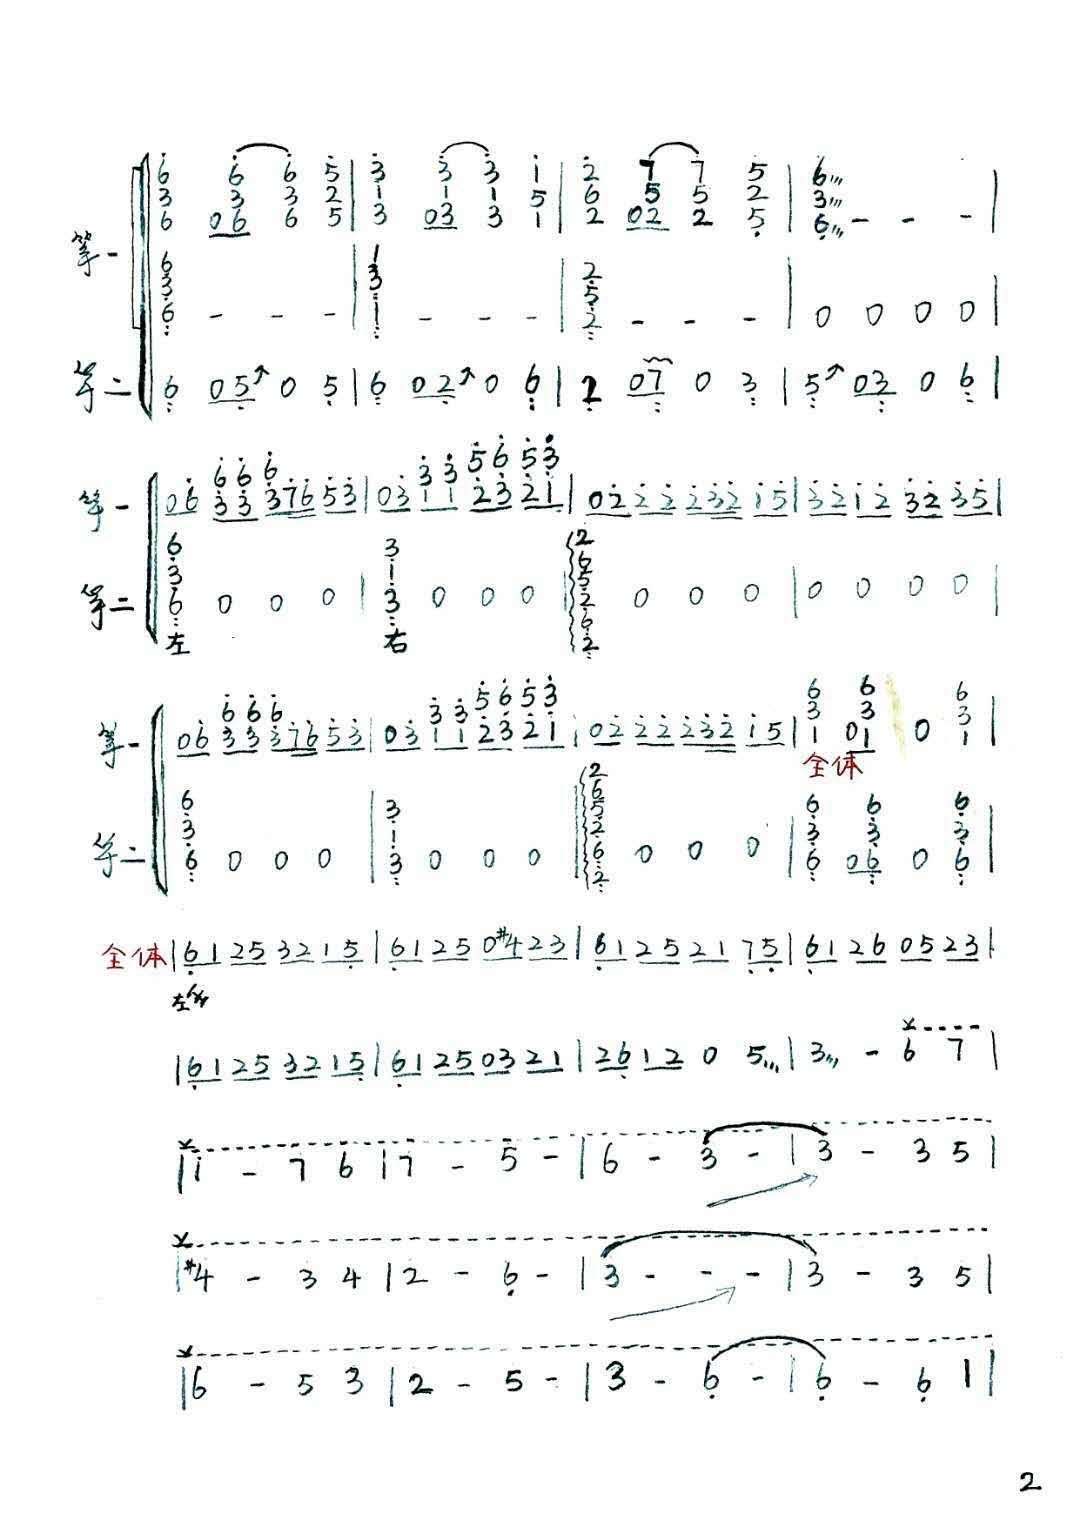 《盛世国乐》古筝重奏版演奏曲谱完整版